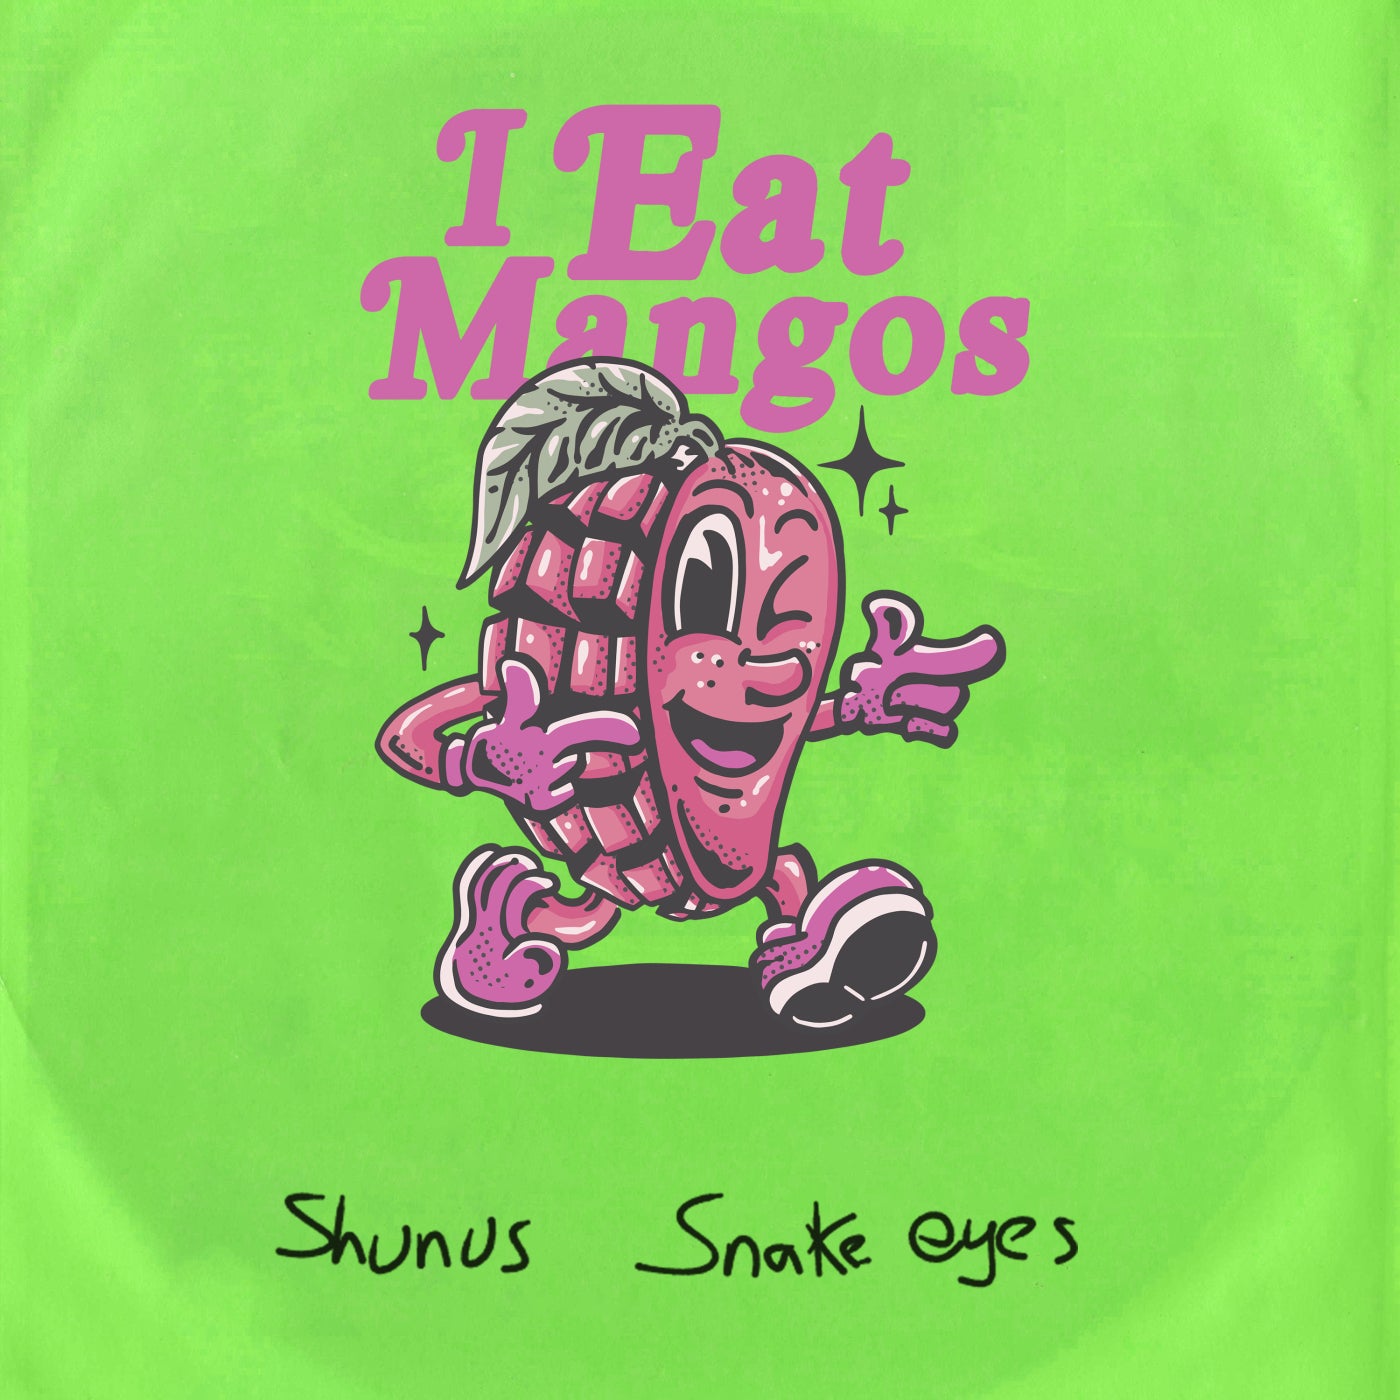 Shunus – Snake Eyes [IEM003]